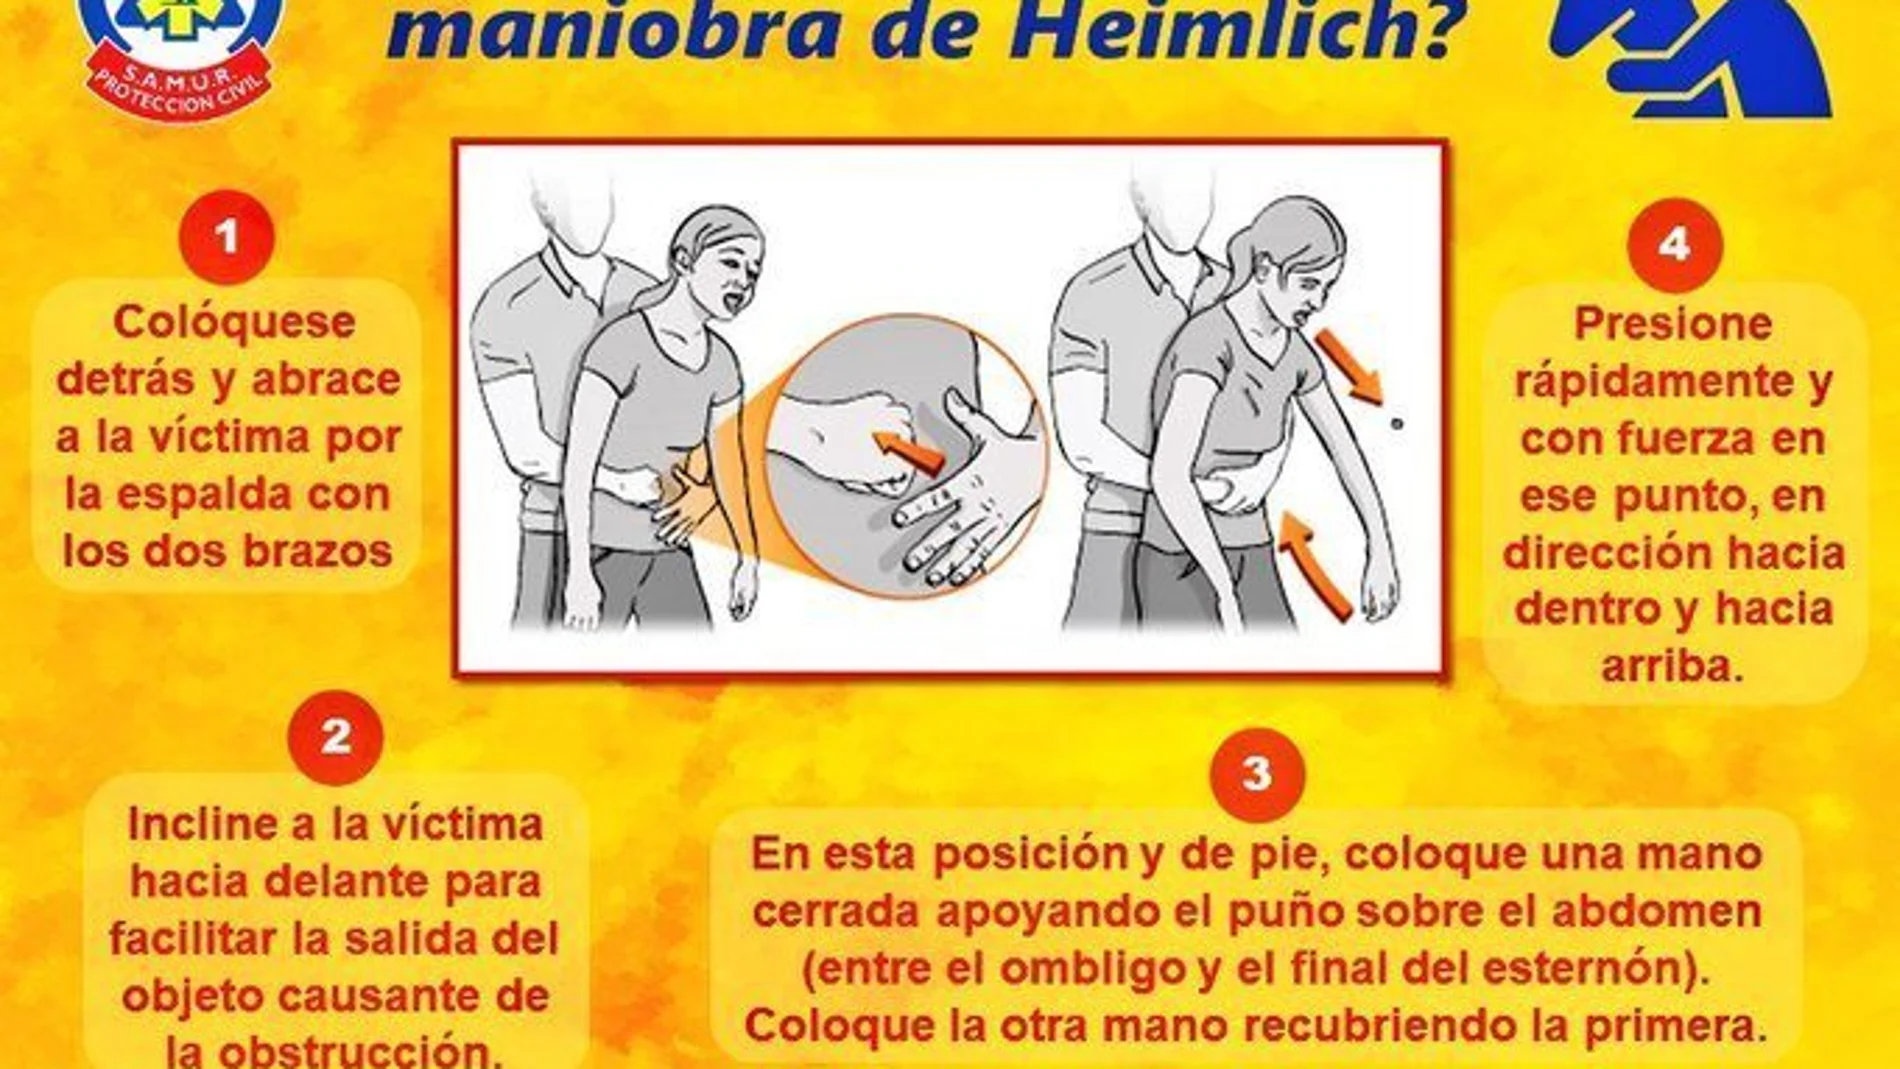 Pasos correctos para una buena maniobra de Heimlich 